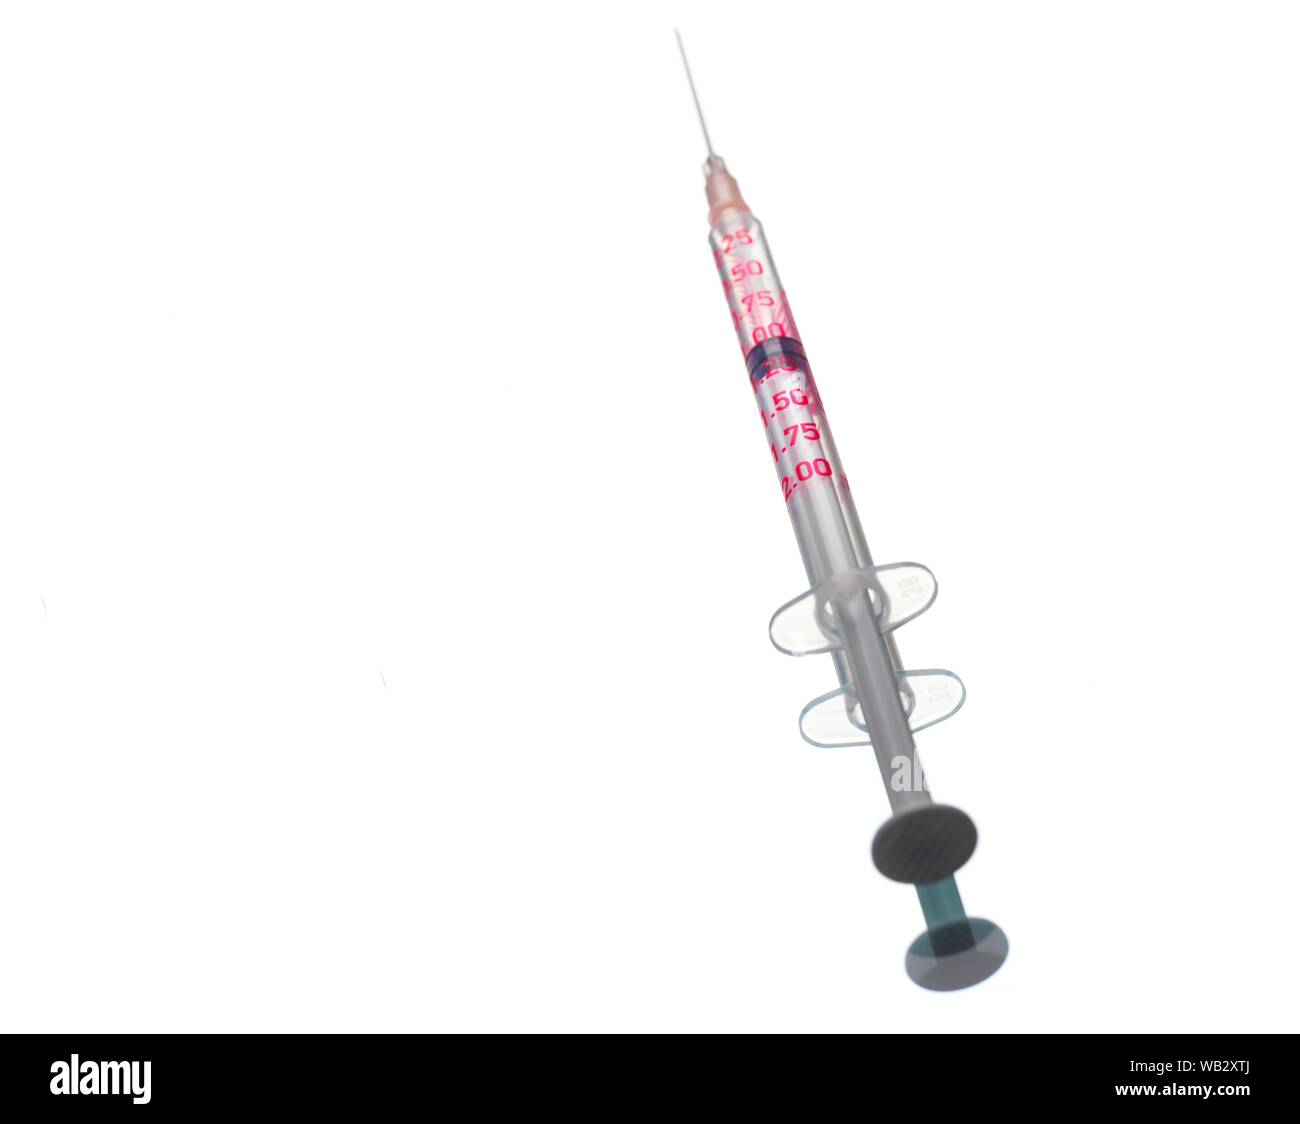 Syringe. Stock Photo